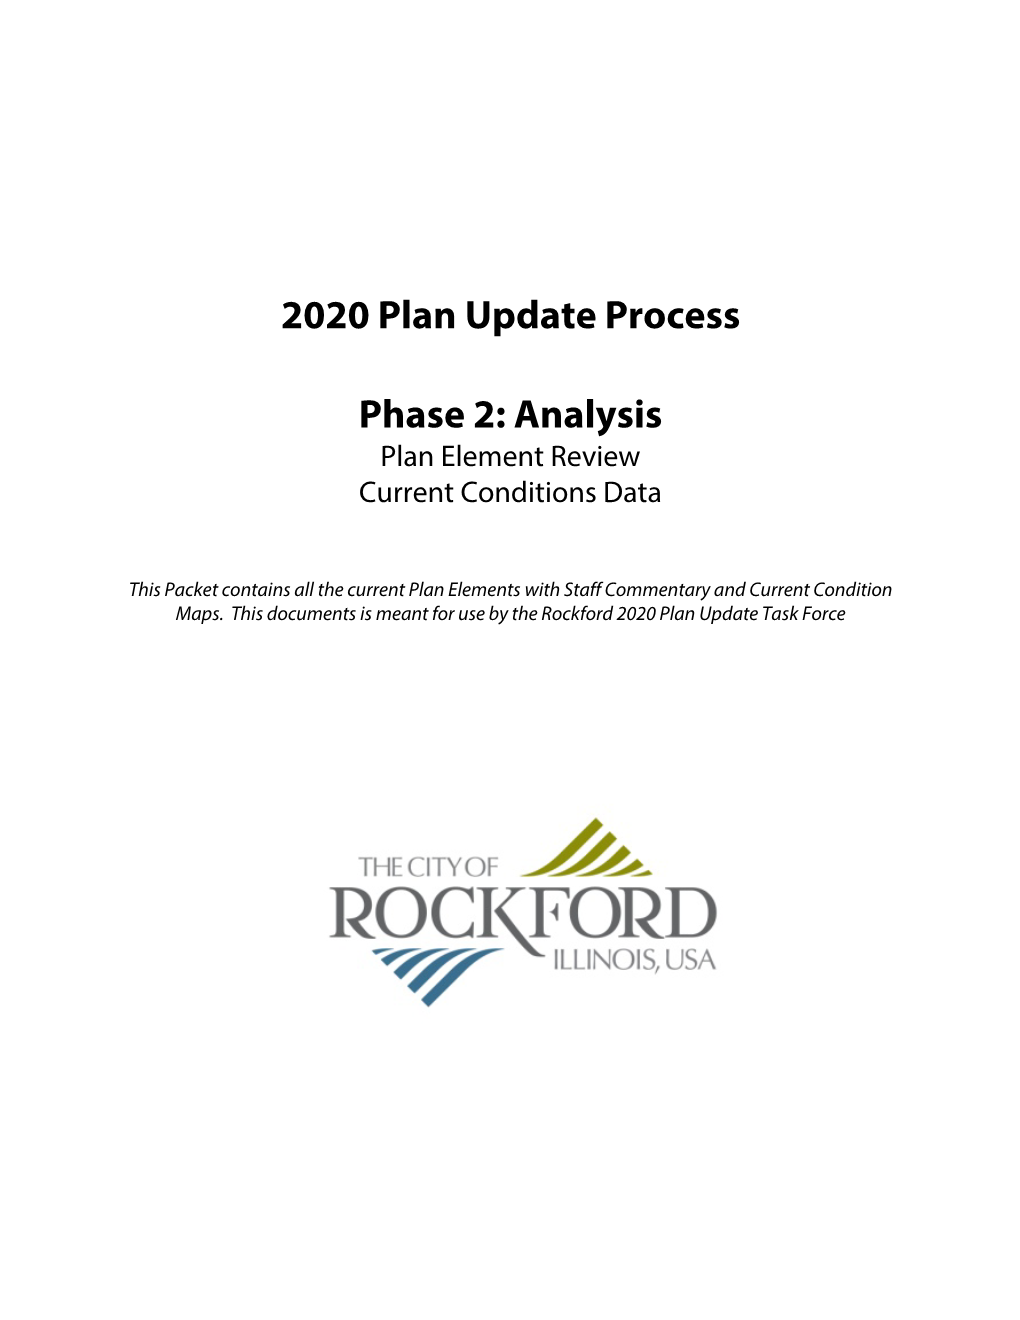 2020 Plan Update Process Phase 2: Analysis